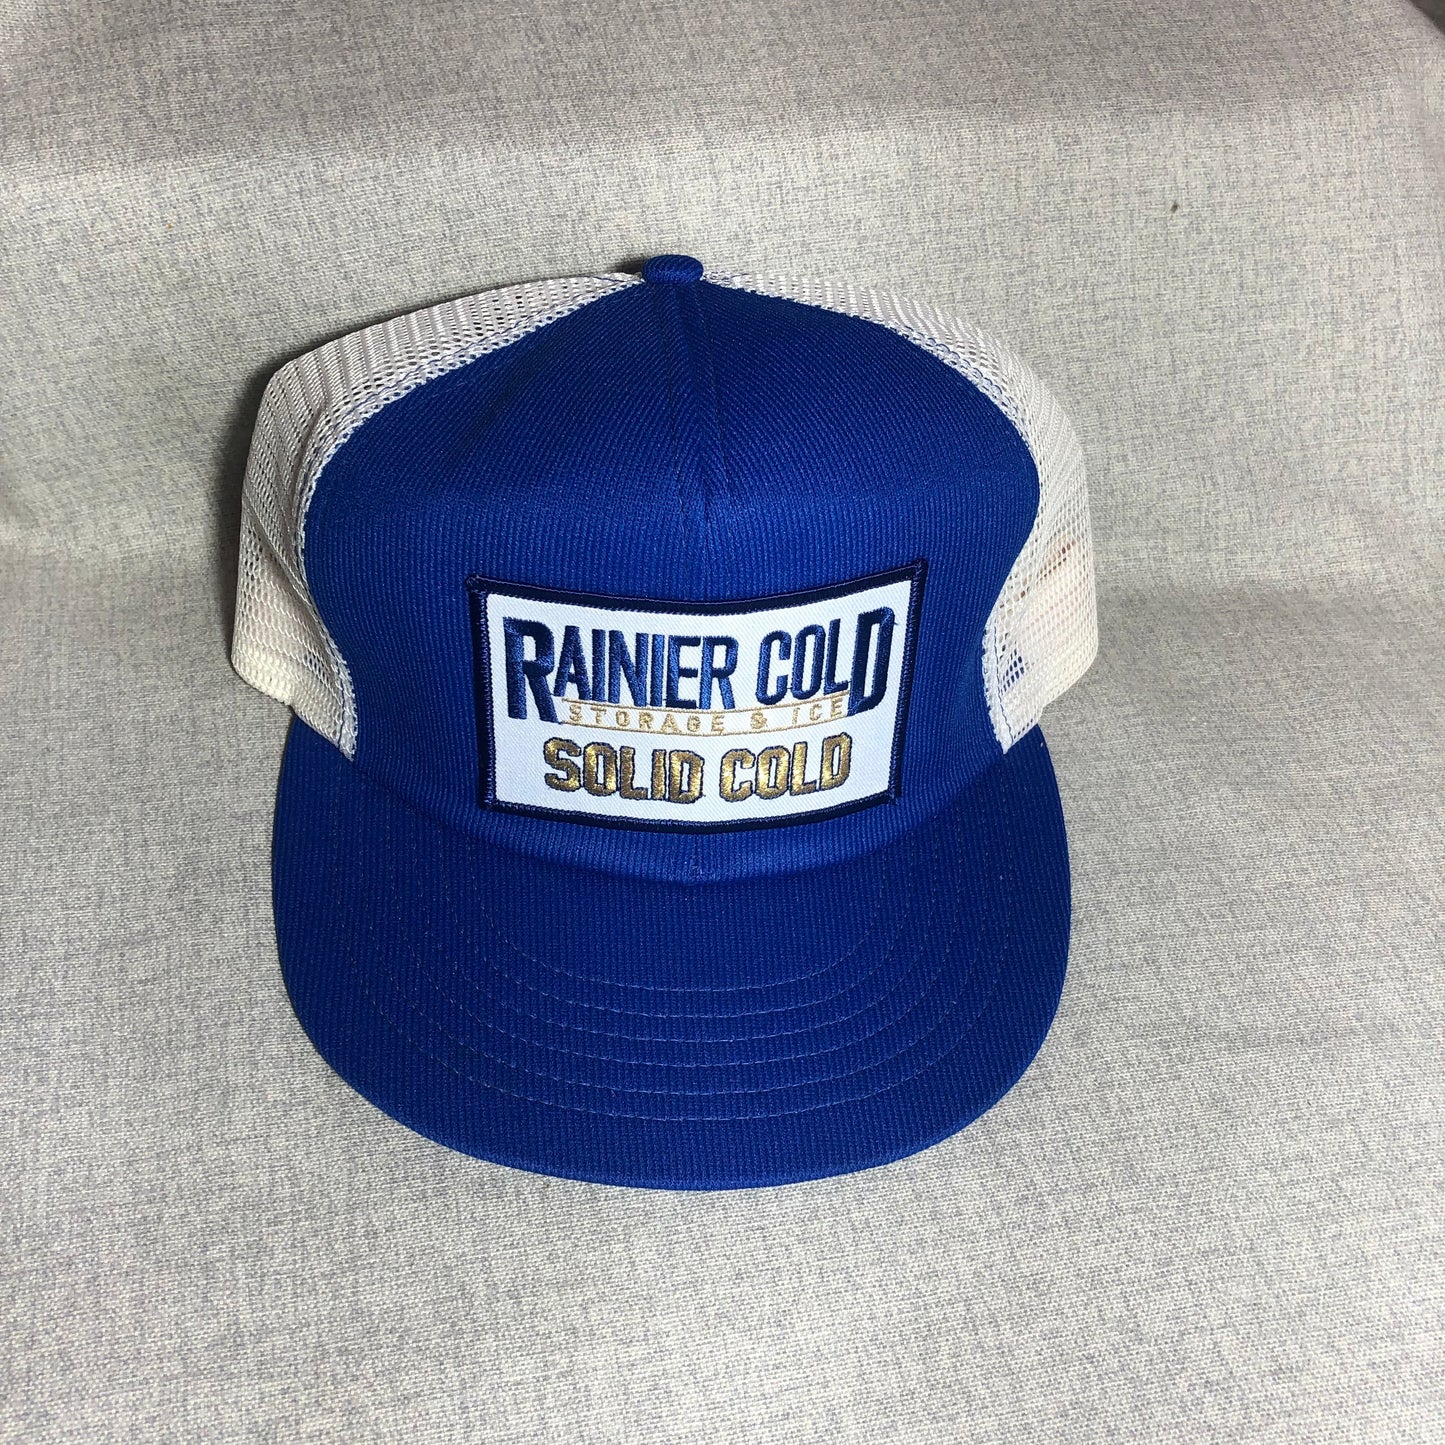 RAINIER Hat Cold Storage and Ice Trucker Cap | Men's FITS 7 1/8 Thru 7 5/8 | White Blue